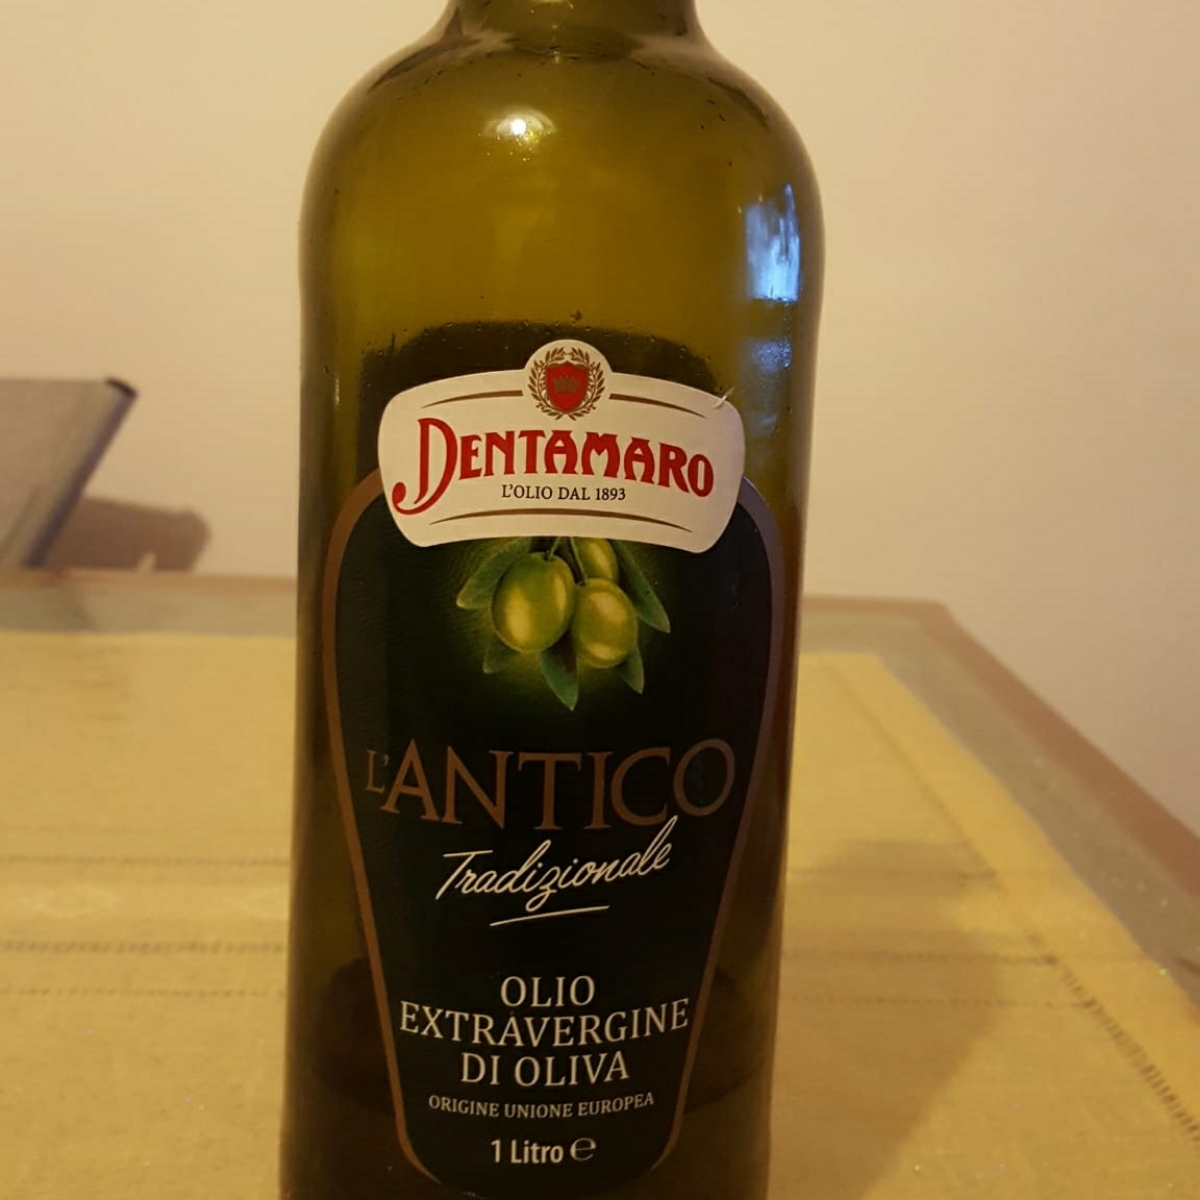 Dentamaro Olio extravergine di oliva Review | abillion